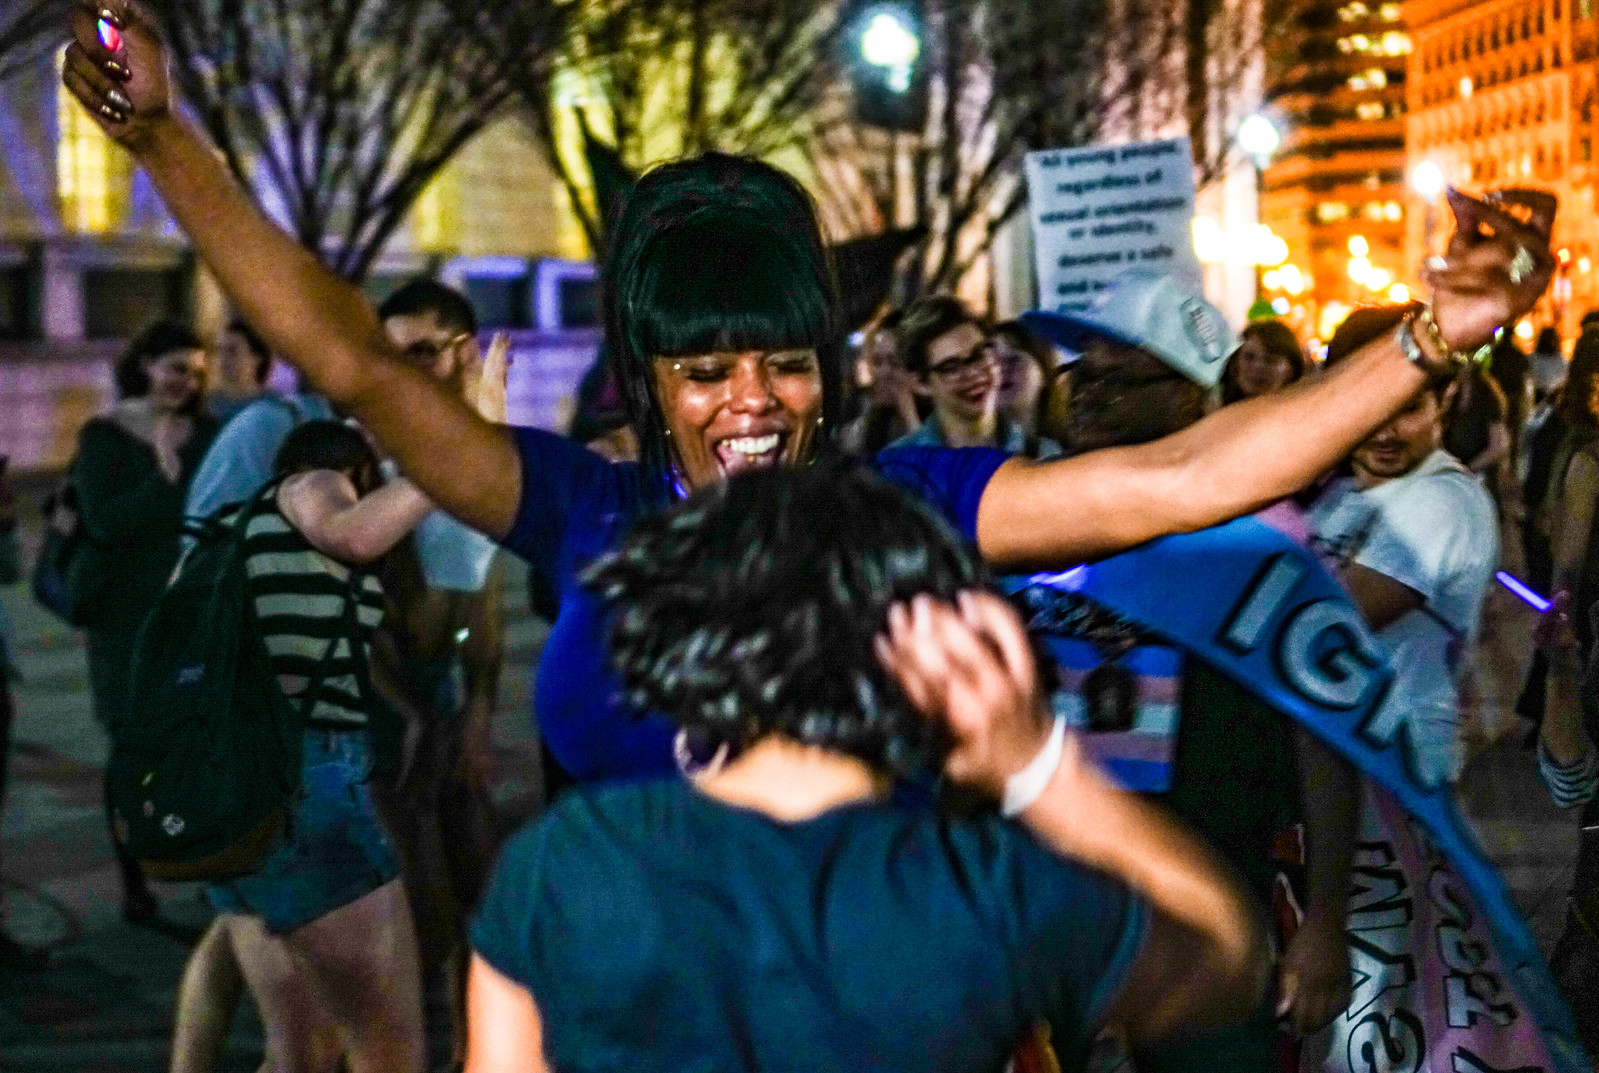 2017.02.24 Dance Protest Celebrating Trans Youth, Washington, DC USA 01197